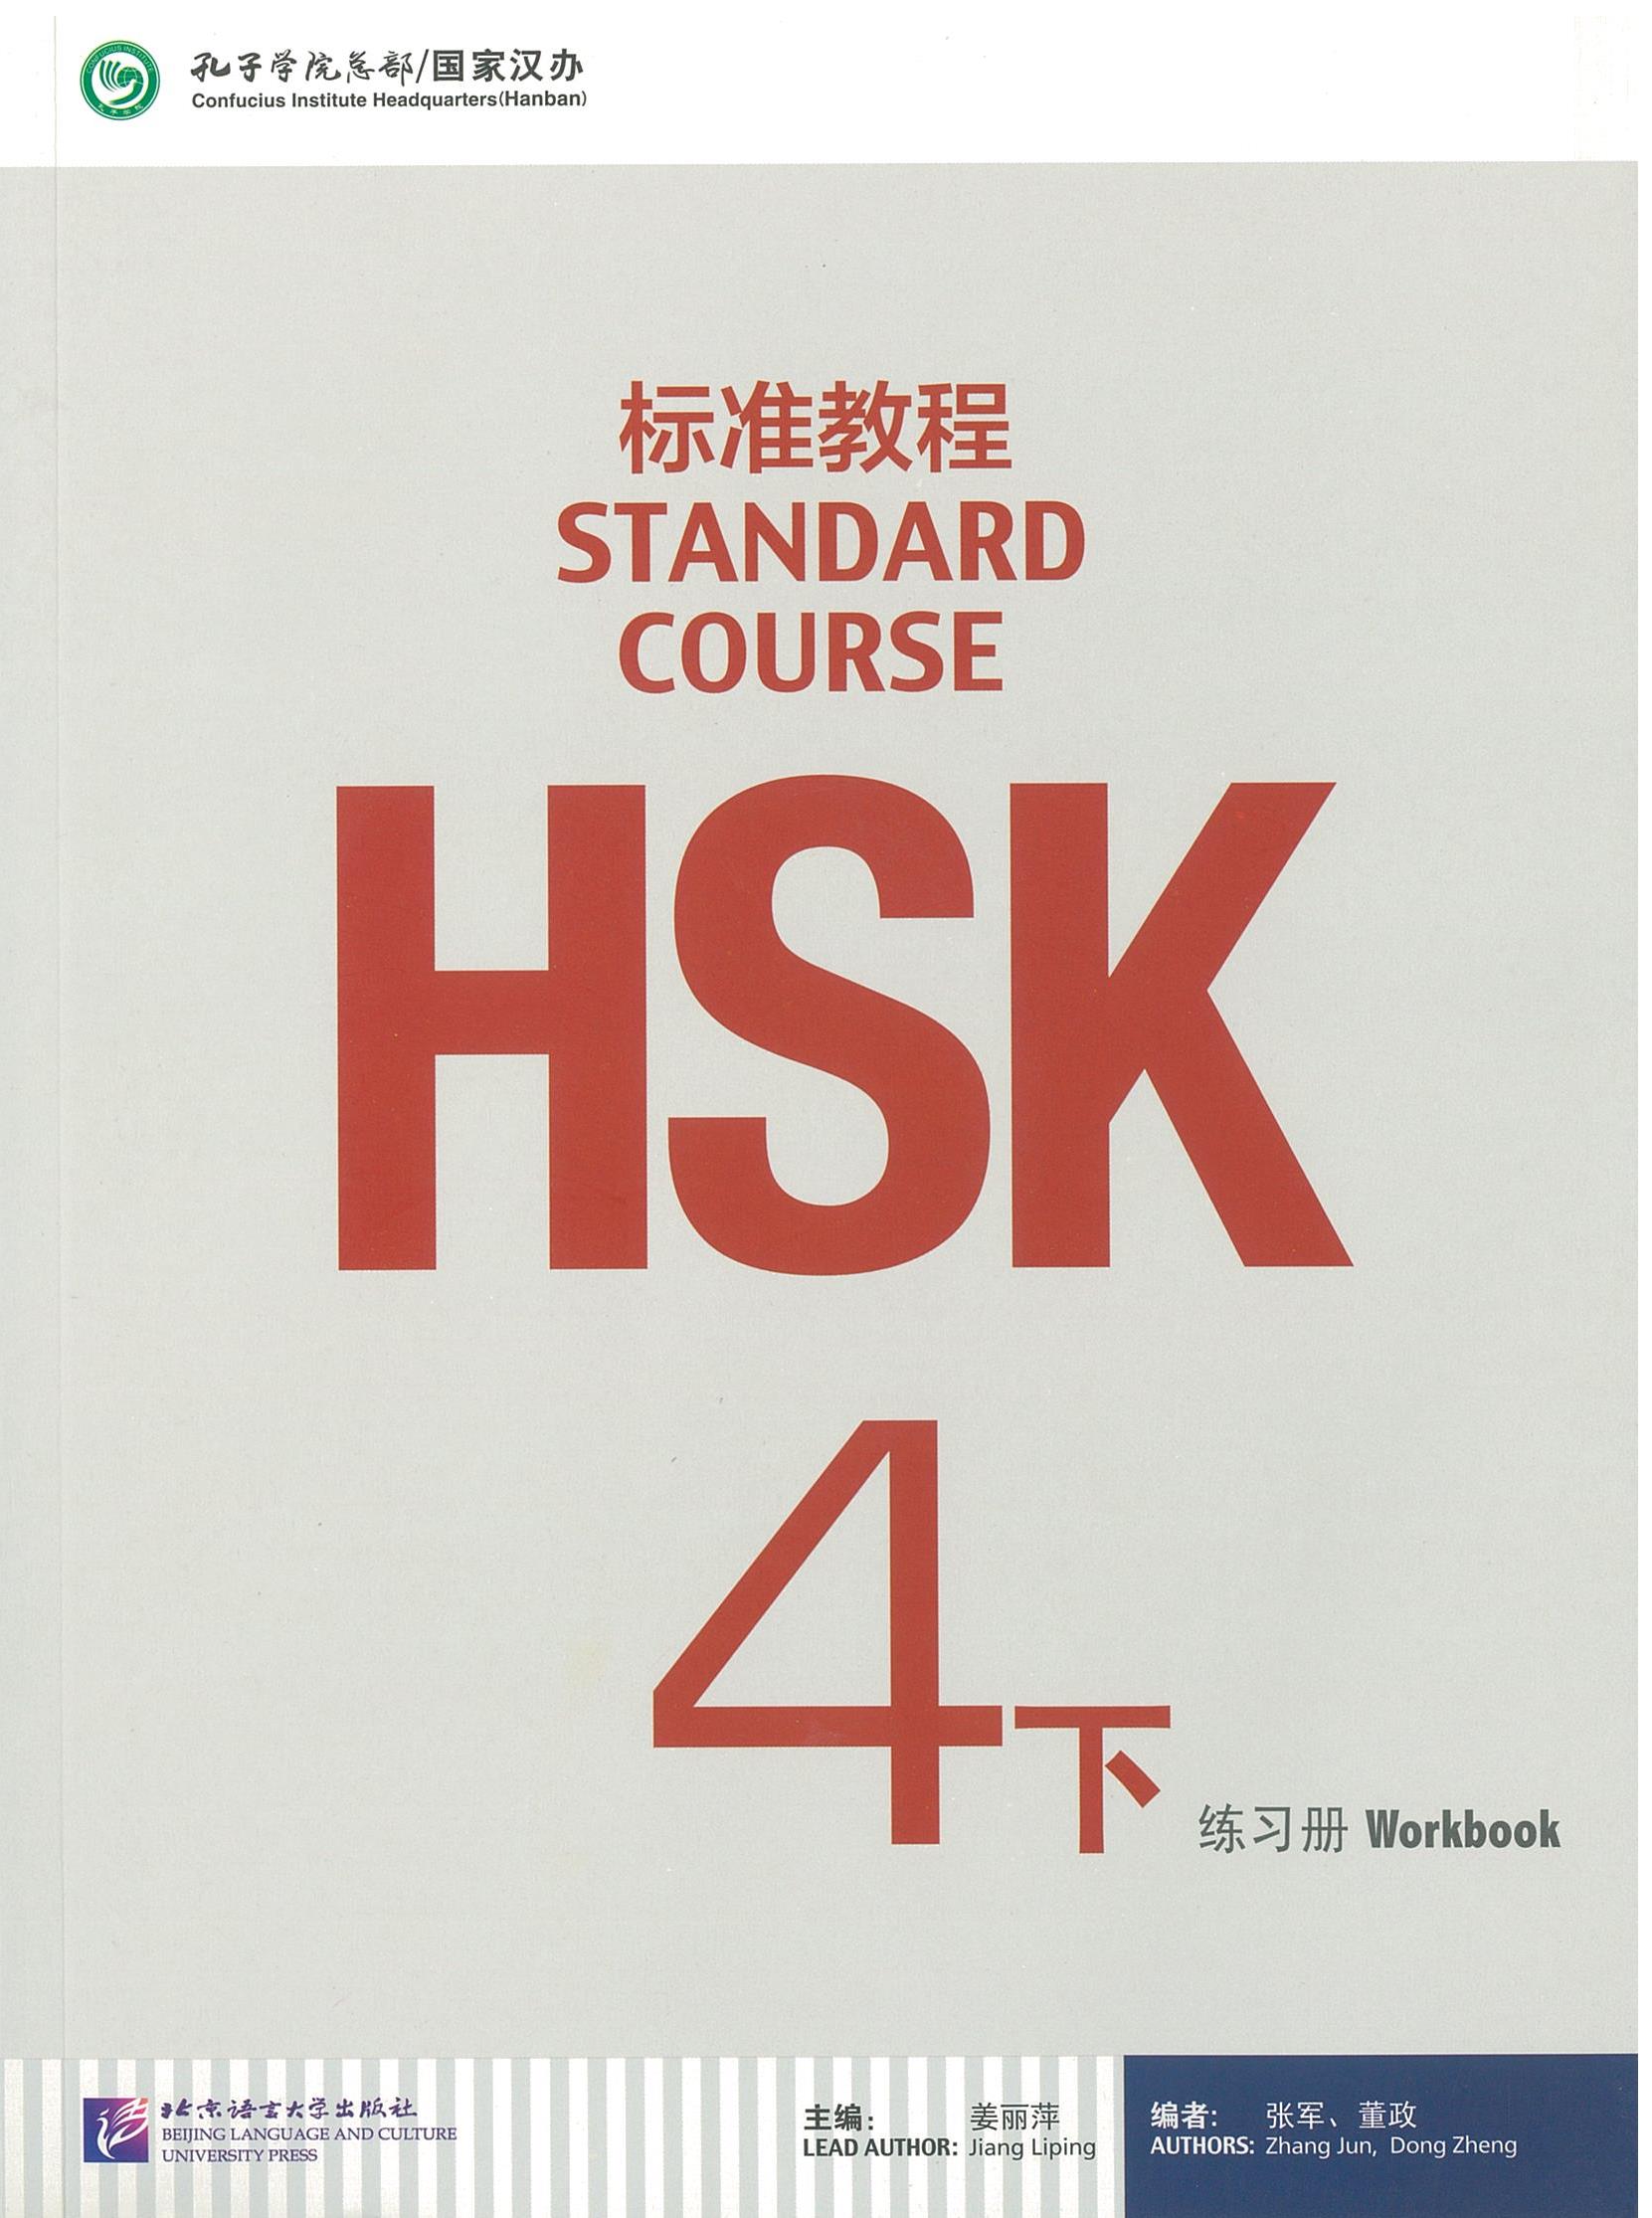 แบบฝึกหัด HSK / Stand Course HSK 4B Workbook / HSK 标准教程 4下 练习册